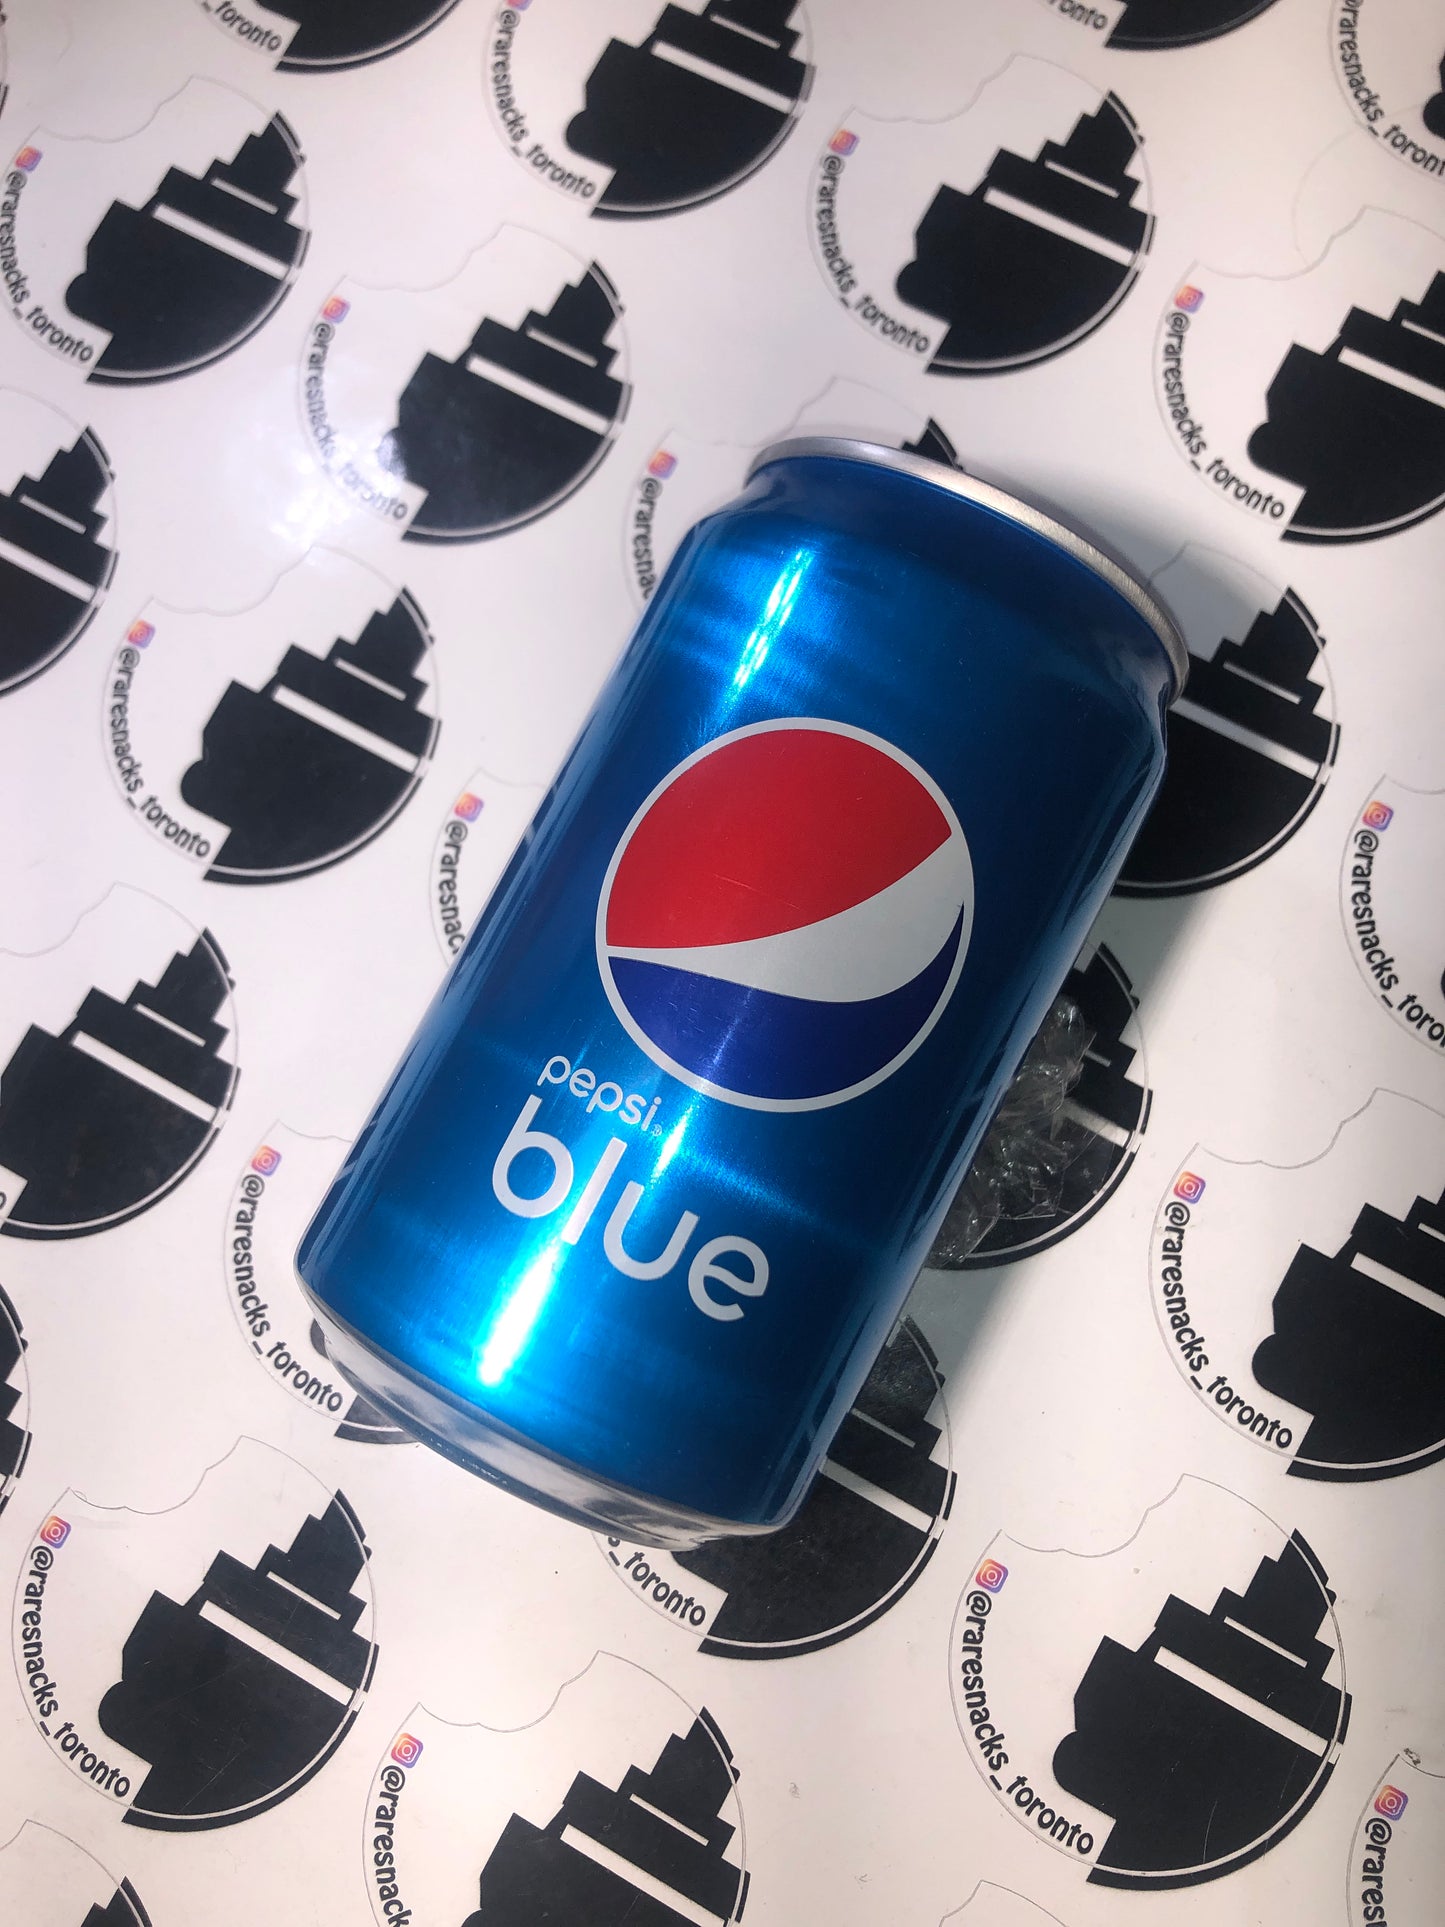 Pepsi Blue 330ml